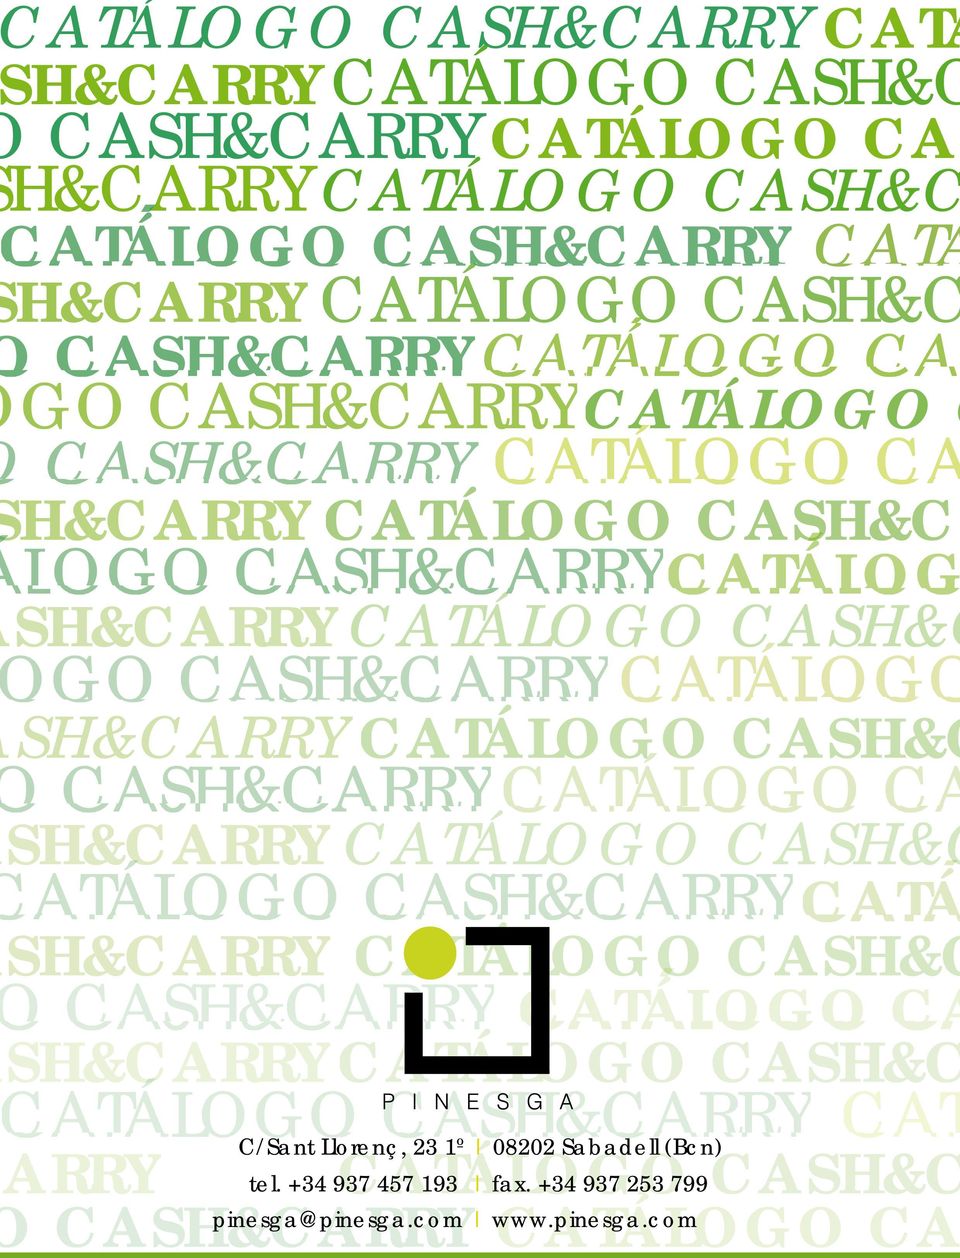 SH&CARRYCATÁLOGO Á G CASH&C CASH&CARRY CATÁLOGO CA SH&CARRY CATÁLOGO CASH&C ATÁLOGO CASH&CARRYCATÁ SH&CARRY CATÁLOGO O CASH&C CASH&CARRY CATÁLOGO CA